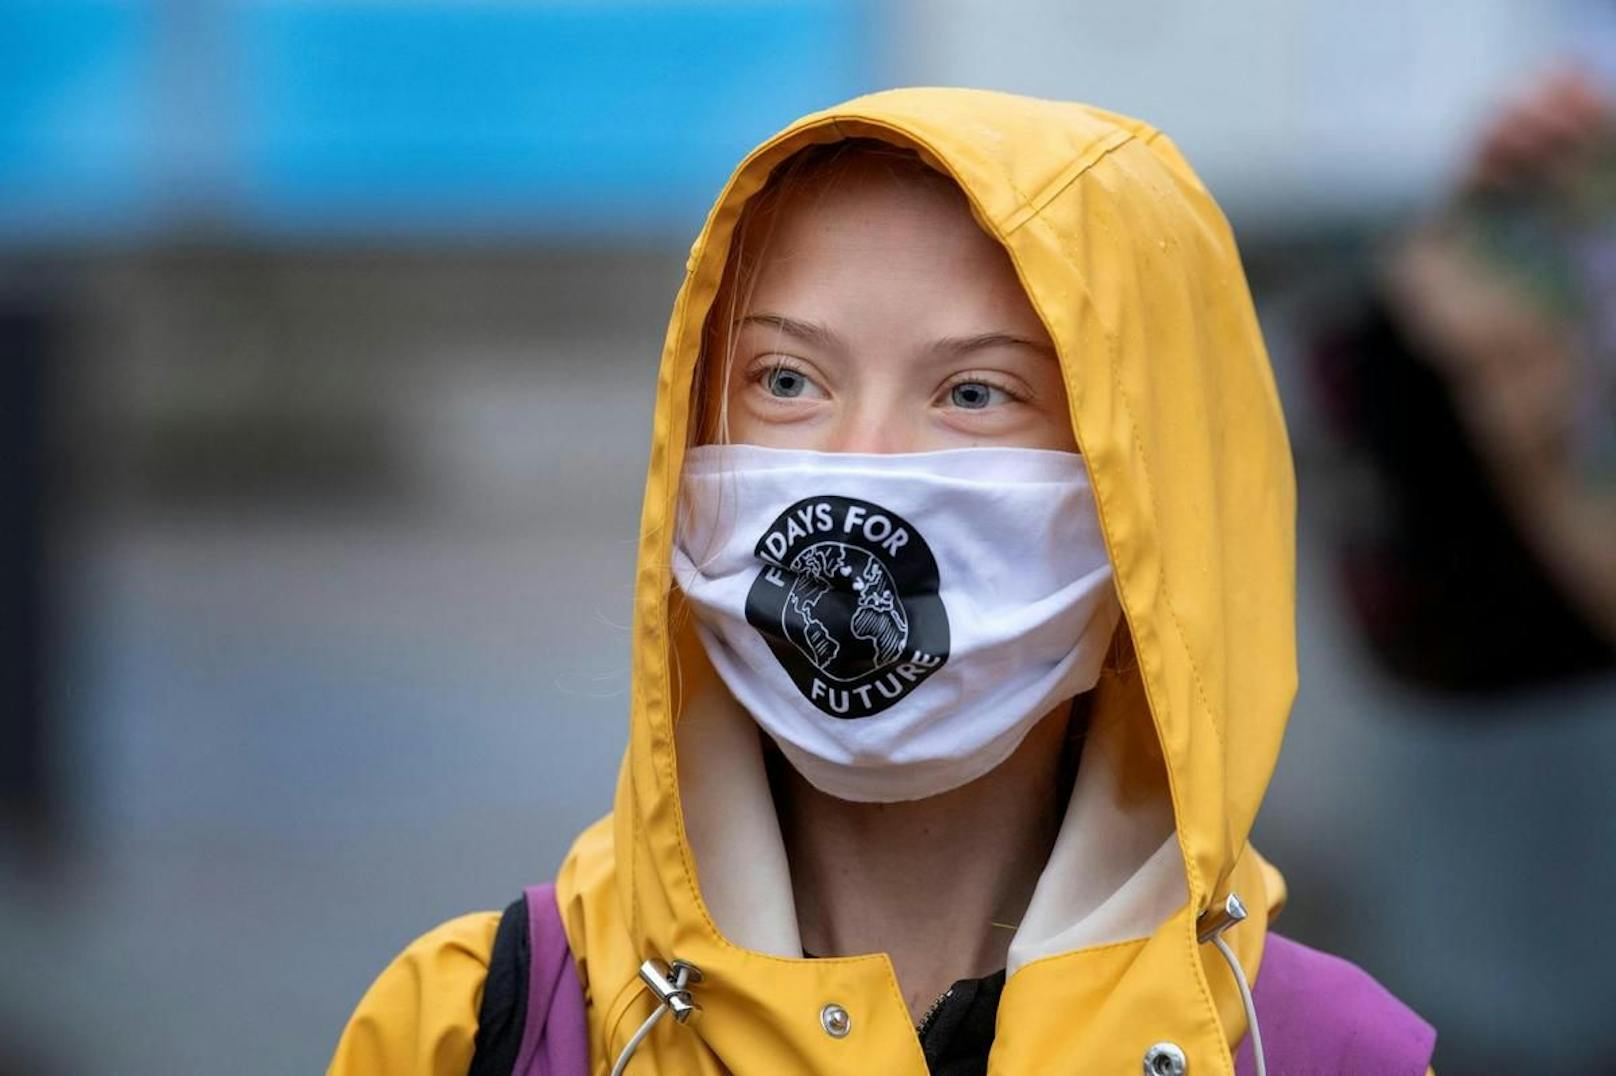 Die schwedische Klima-Aktivistin retweete einen Medienbericht, wonach Umweltverschmutzung dazu führen soll, dass Buben mit kleineren Penissen zur Welt kommen.